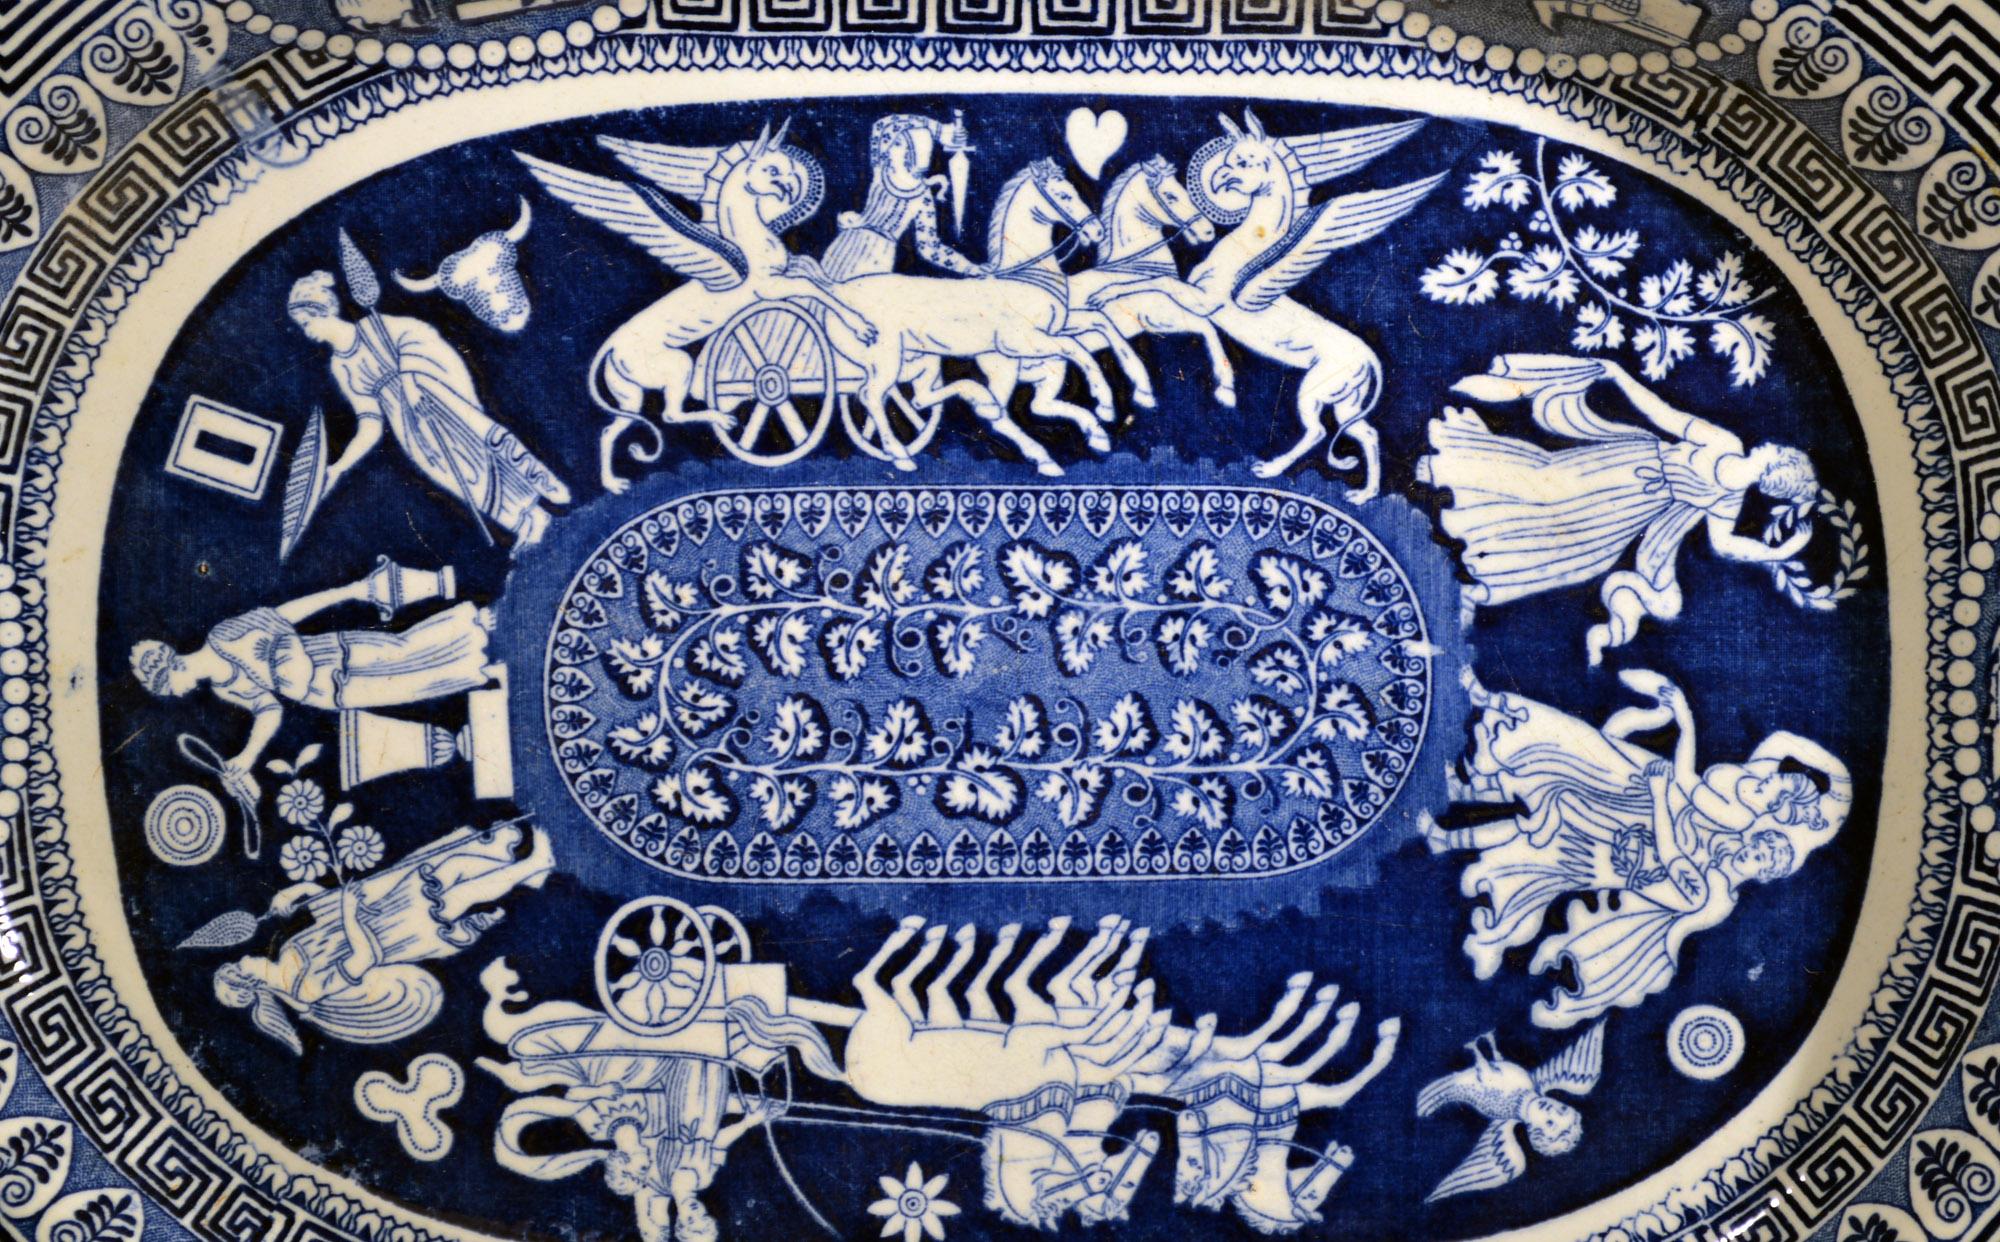 Grand plat néoclassique d'Herculanum à motif grec imprimé en bleu,
Début du 19e siècle

Le motif central en bleu sous glaçure de la poterie d'Herculanum montre une série d'images encerclant un panneau ovale avec une vigne feuillue. Il y a deux